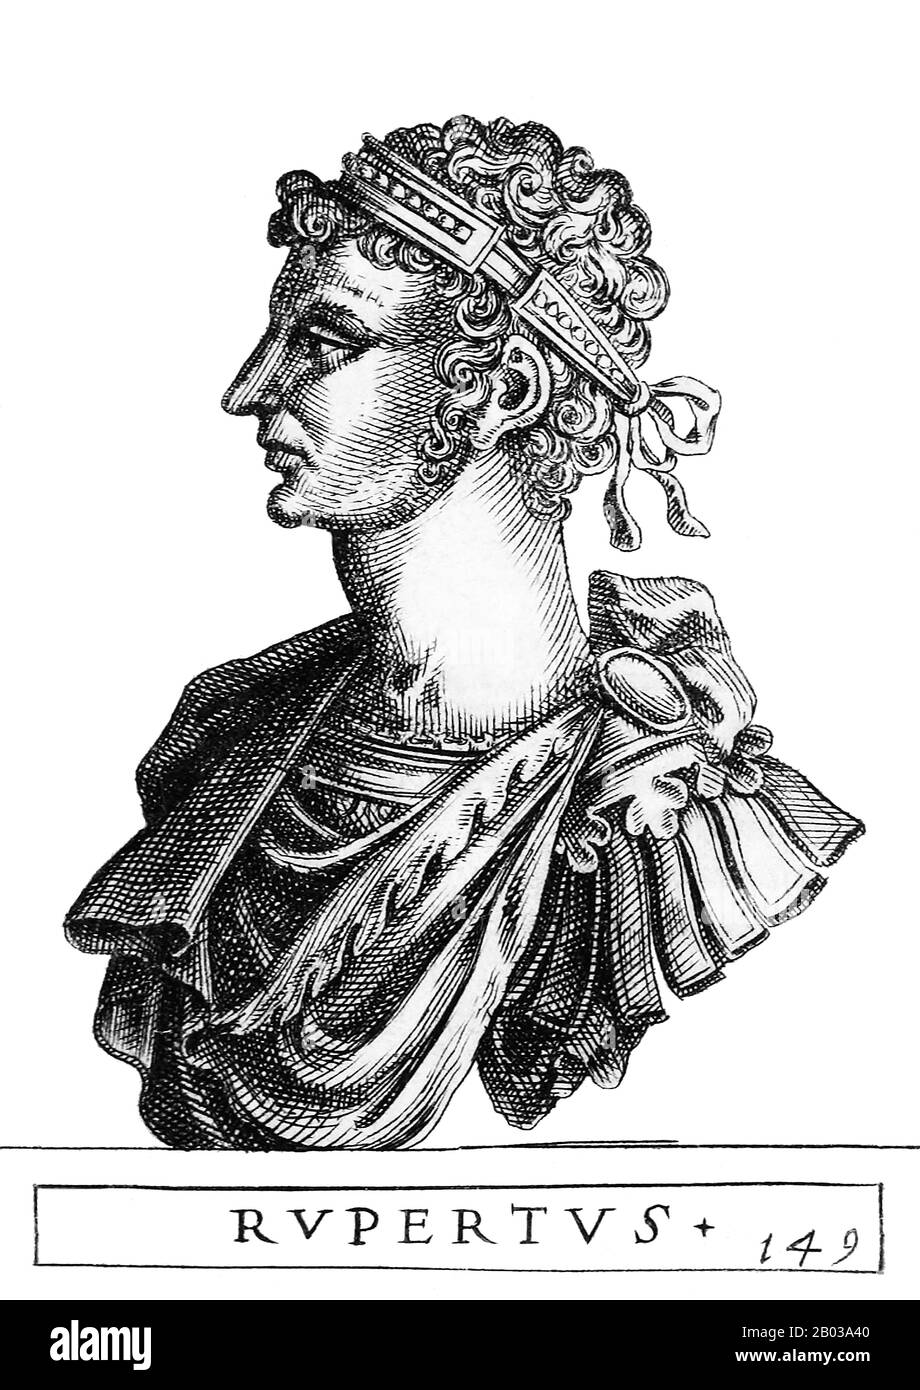 Rupert (1352-1410), auch Rupert von der Pfalz und Rupert der Sanfte genannt, war der Sohn des kurpfälzischen Kurators Rupert II. Und ein entfernter Verwandter von Kaiser Ludwig IV. Er trat 1398 die Nachfolge seines Vaters als kurpfälzischer Kurfürst an und wurde 1400 von seinen Fürstenkollegen zum König von Deutschland erklärt und König Wenceslaus abgesetzt. Rupert fehlte eine solide Machtbasis innerhalb des Heiligen römischen Imperiums, seine vom Haus Luxemburg angefochtene Herrschaft, das Haus von König Wenceslaus, der sich weigerte, seine Entthronung anzuerkennen, aber keine direkte Aktion gegen Rupert vornahm. Er marschierte 1401 in Italien ein, in der Hoffnung, zum Heiligen Roman gekrönt zu werden Stockfoto